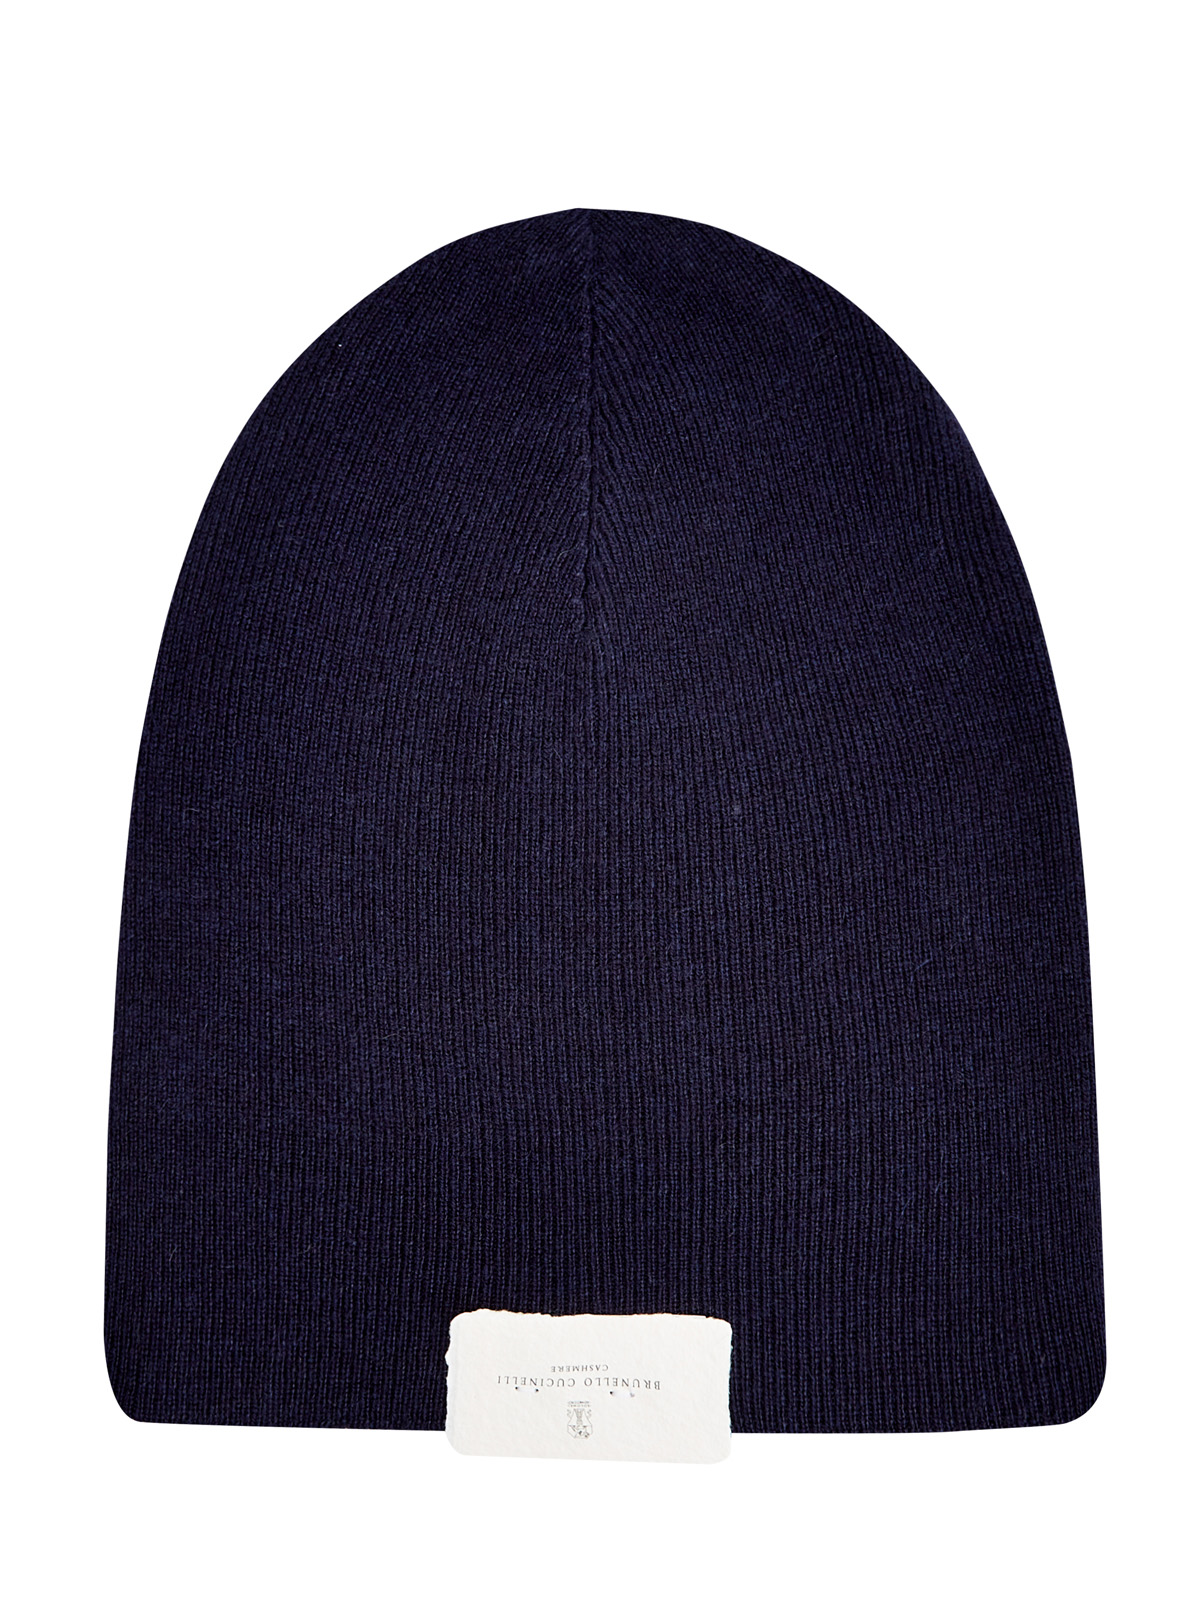 Однотонная шапка из кашемировой пряжи английской вязки BRUNELLO CUCINELLI, цвет синий, размер M;L;XL